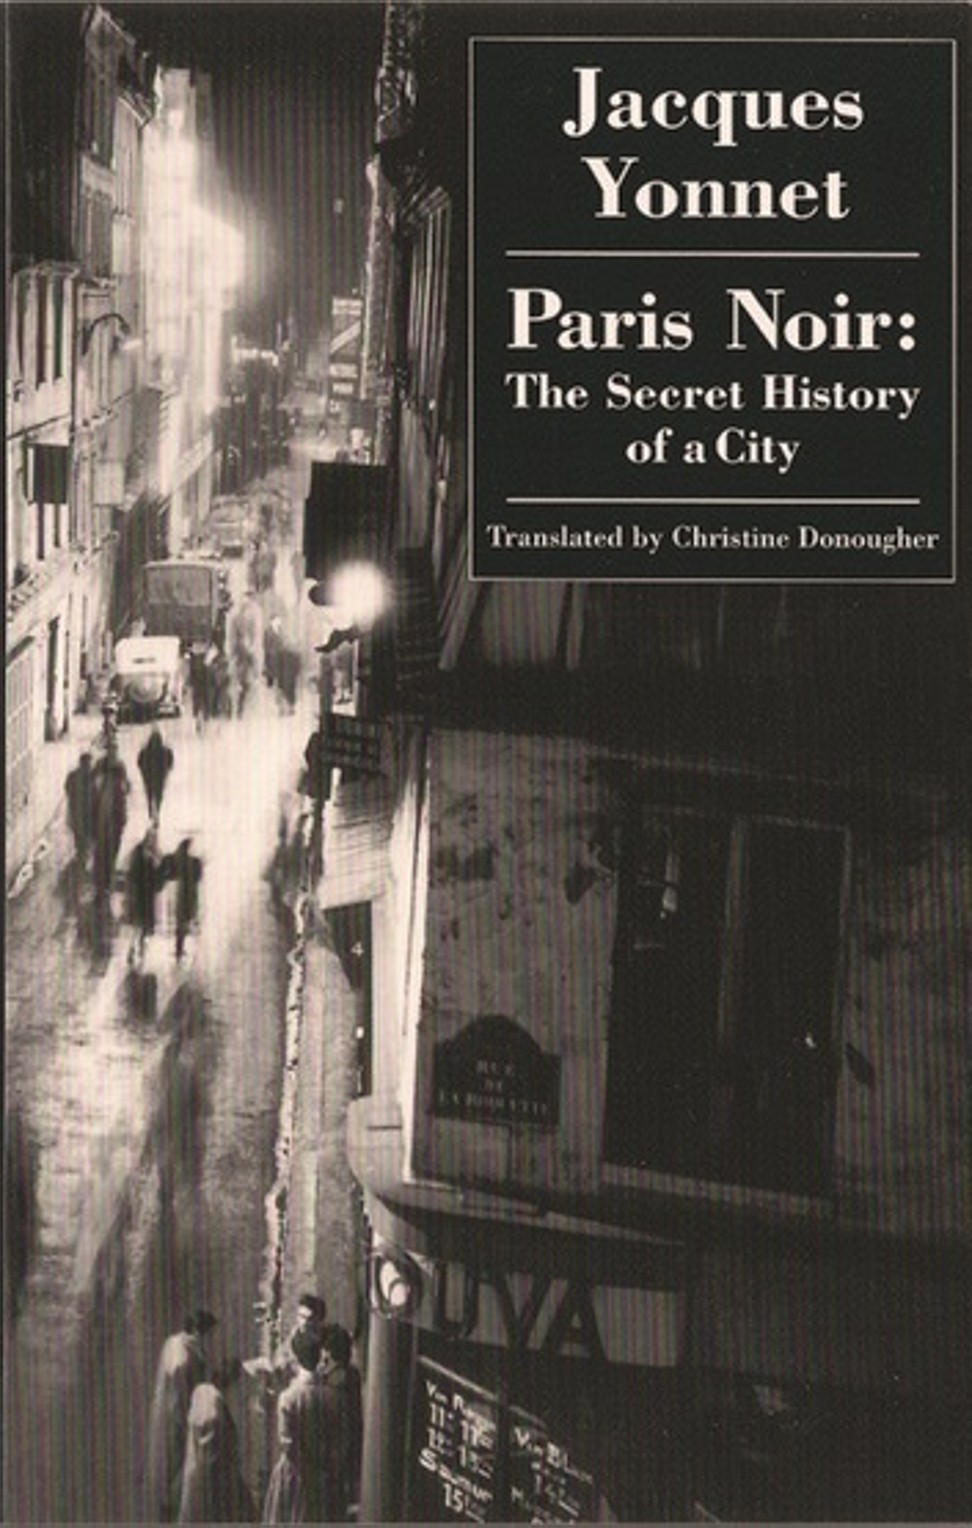 Paris Noir, by Jacques Yonnet.